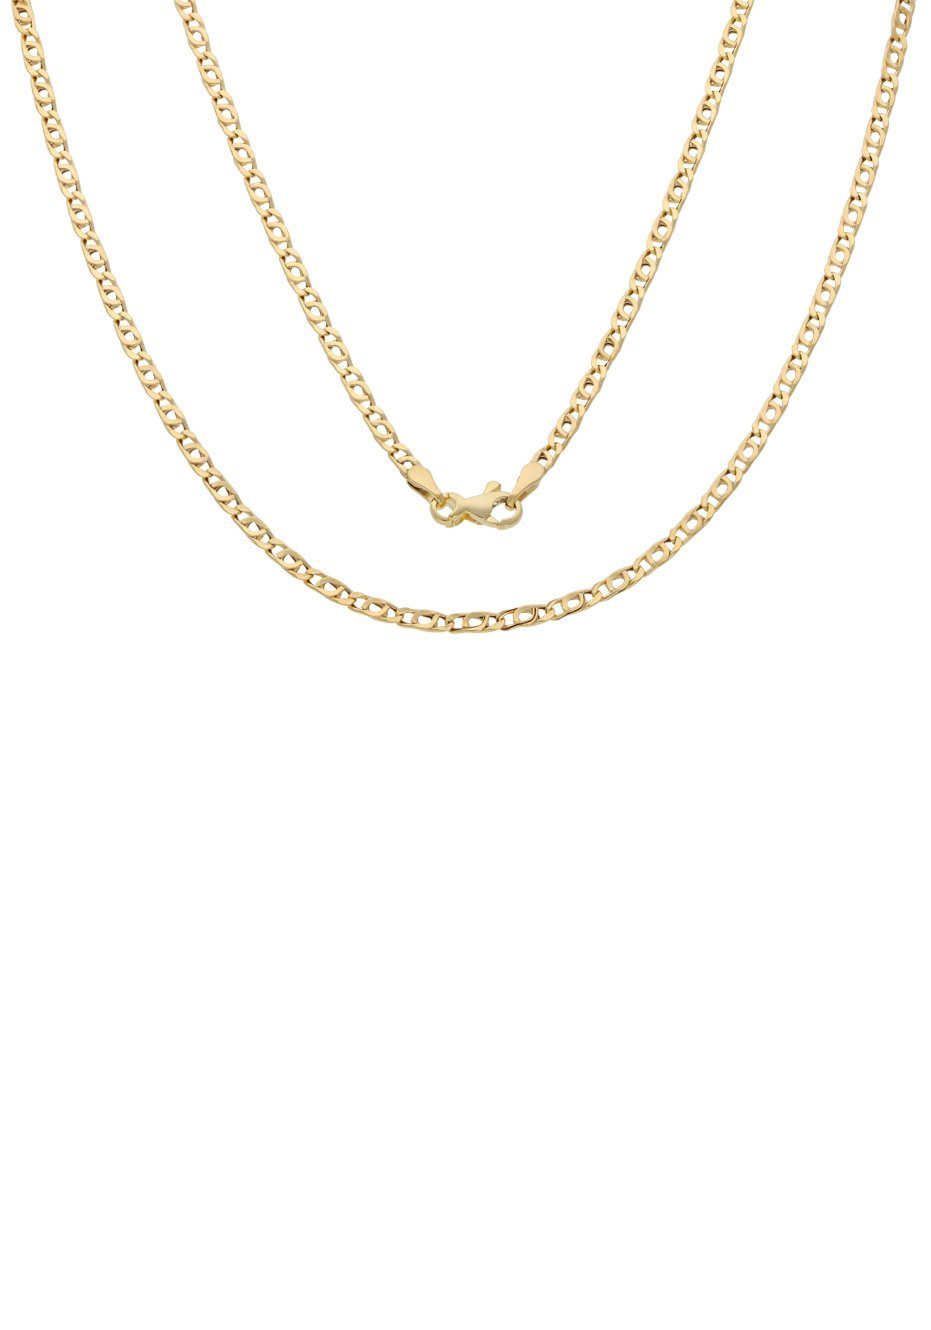 Firetti Goldkette Schmuck Geschenk Gold 375 Halsschmuck Halskette Goldkette Tigerauge, zu Kleid, Shirt, Jeans, Sneaker! Anlass Geburtstag Weihnachten